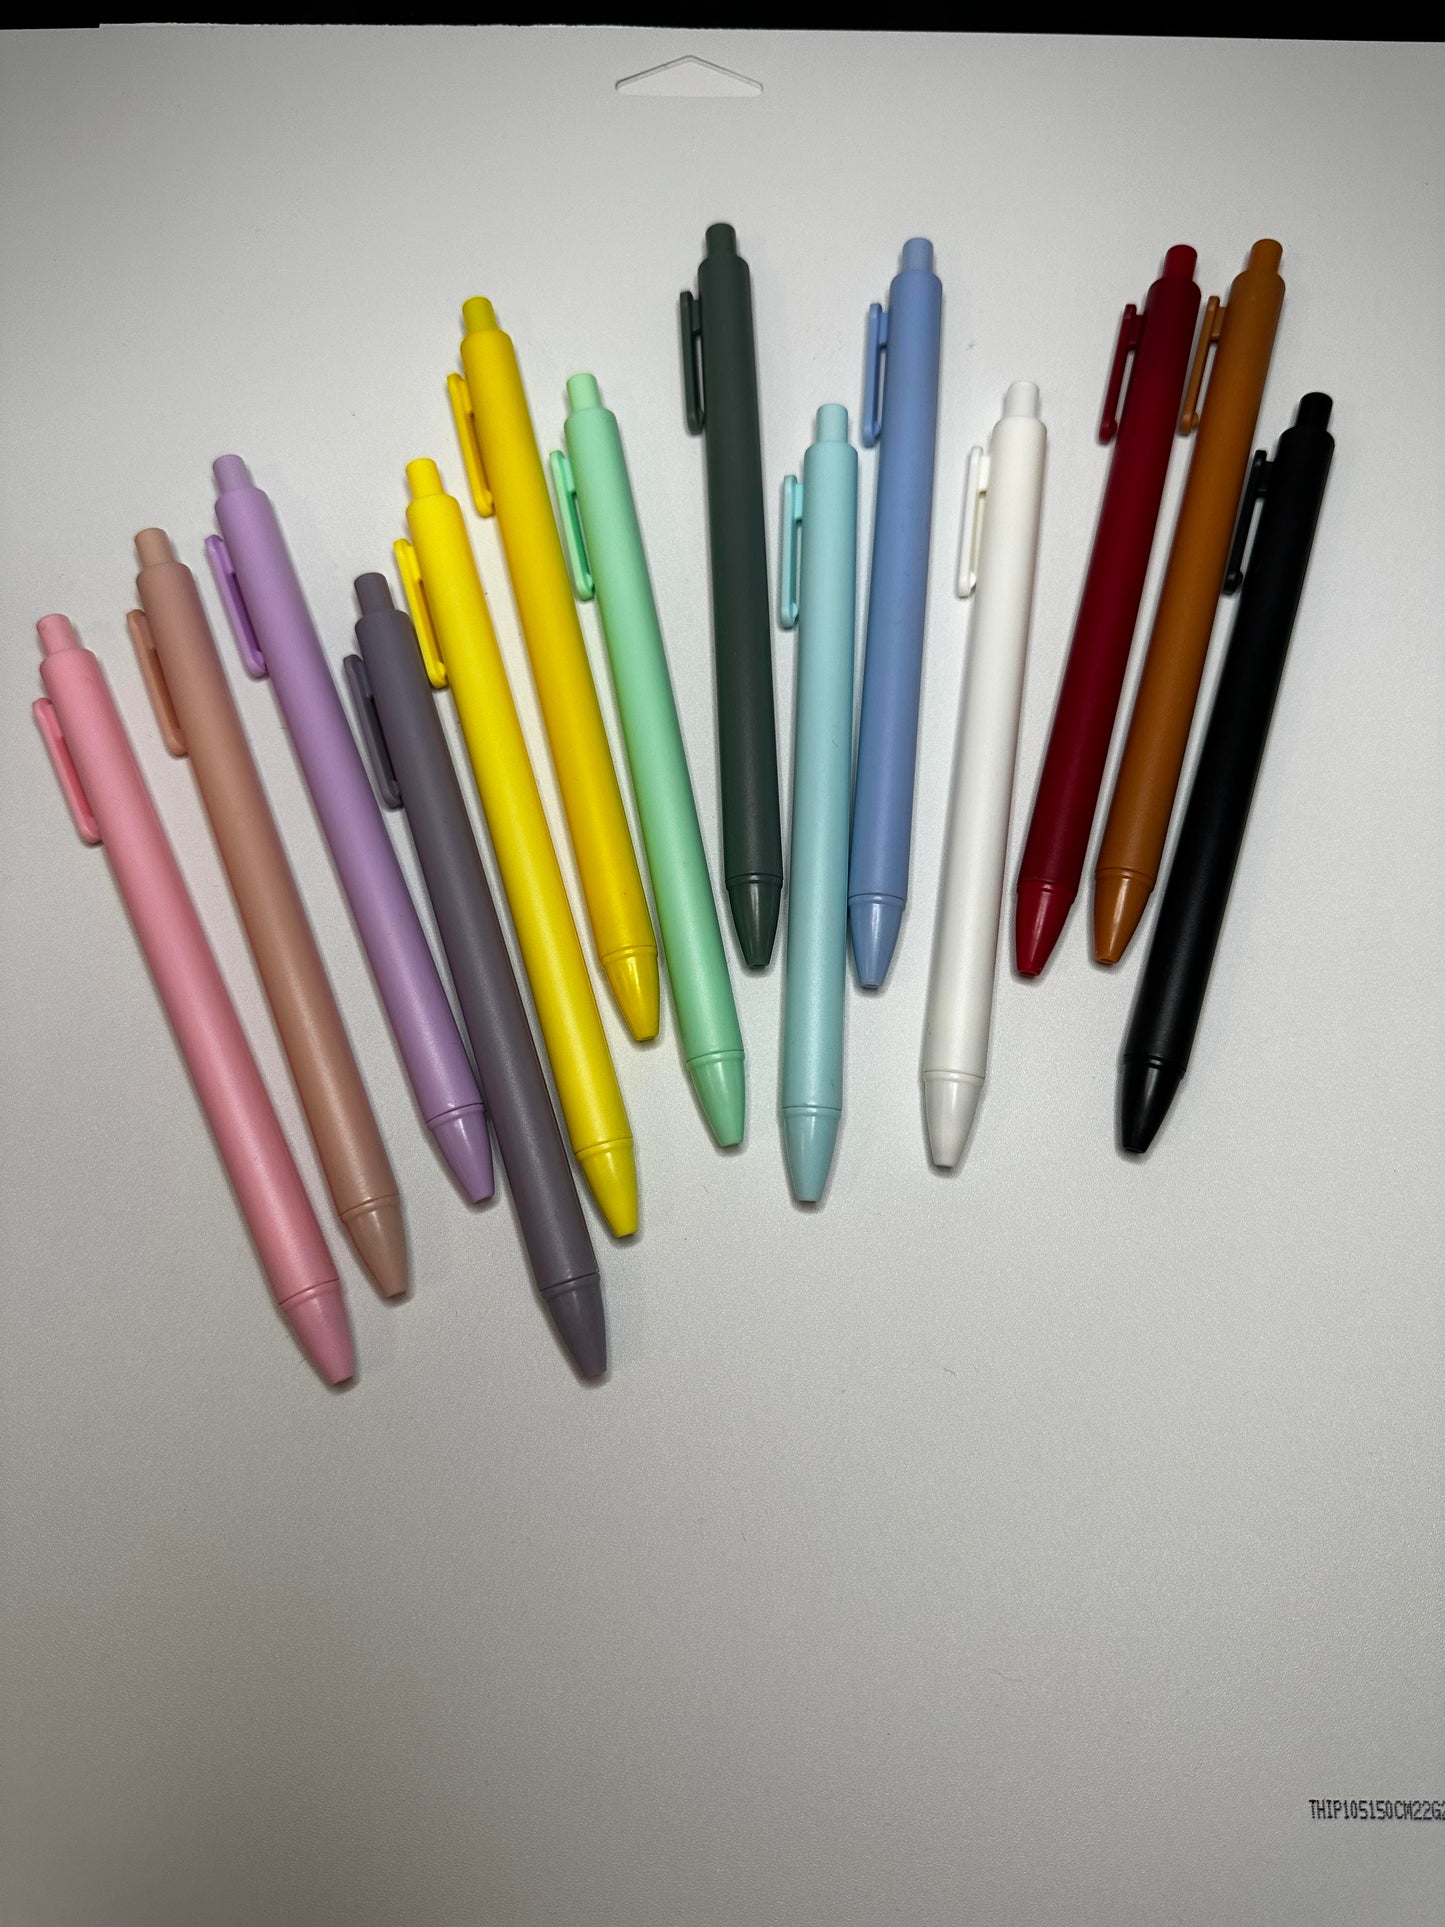 Rainbow Flower Pen